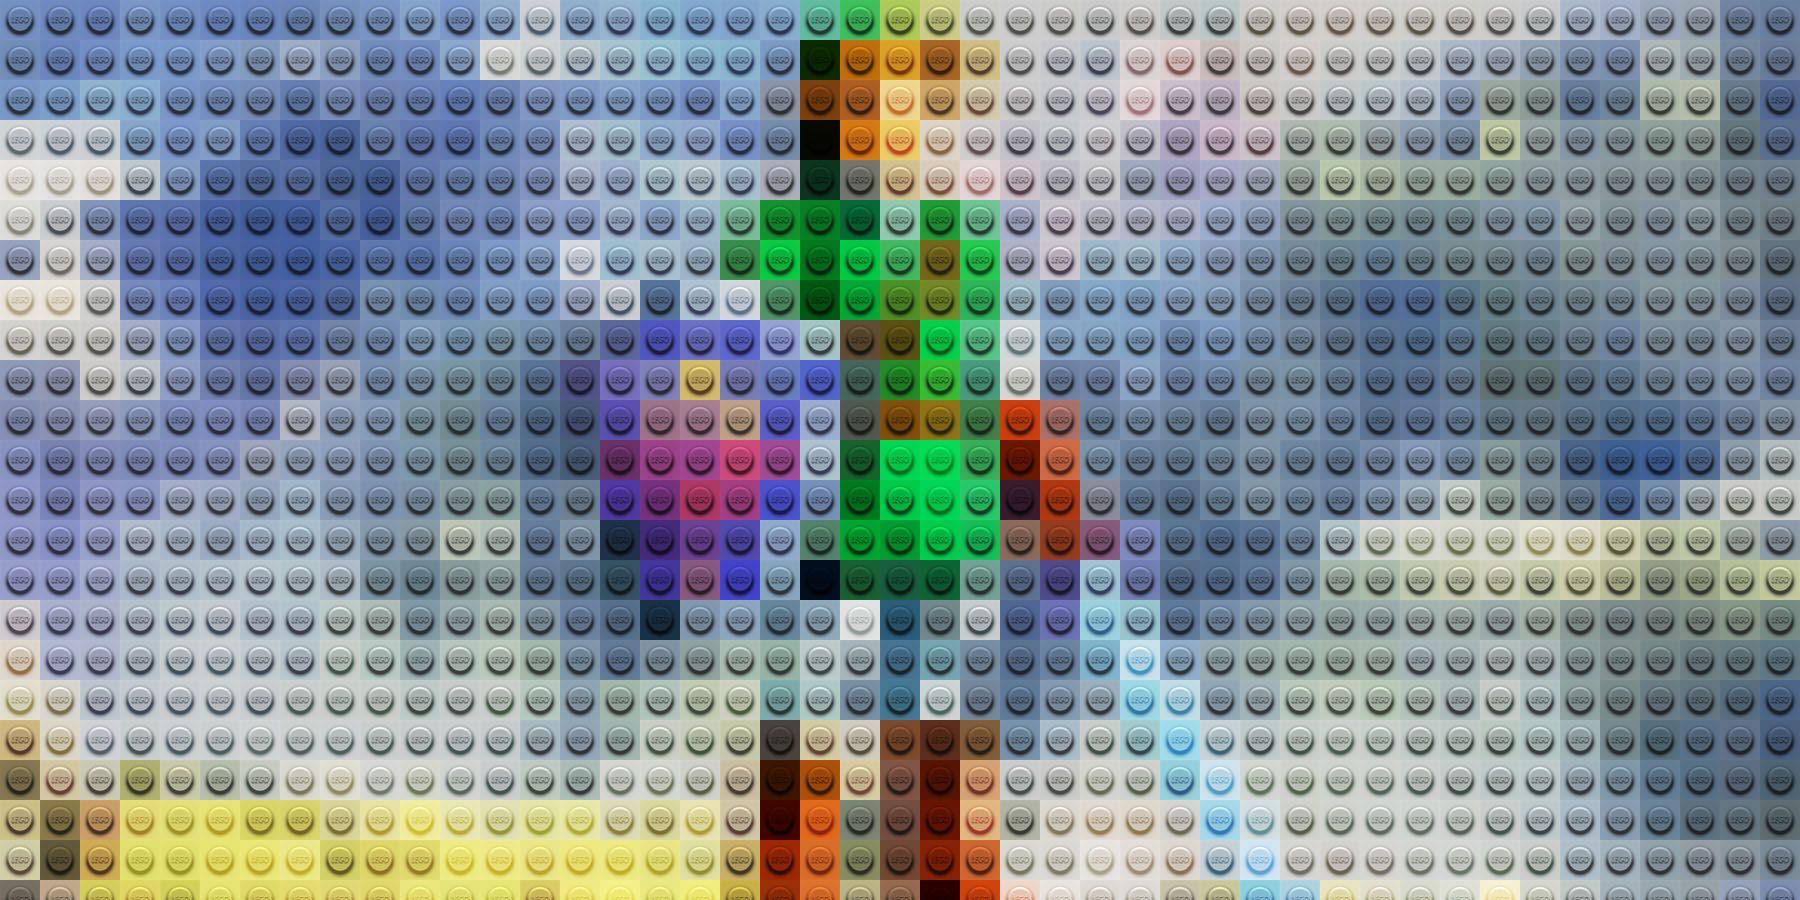 LEGO THE LEGEND OF ZELDA IS HAPPENING!?! - So is LEGO Splatoon! 